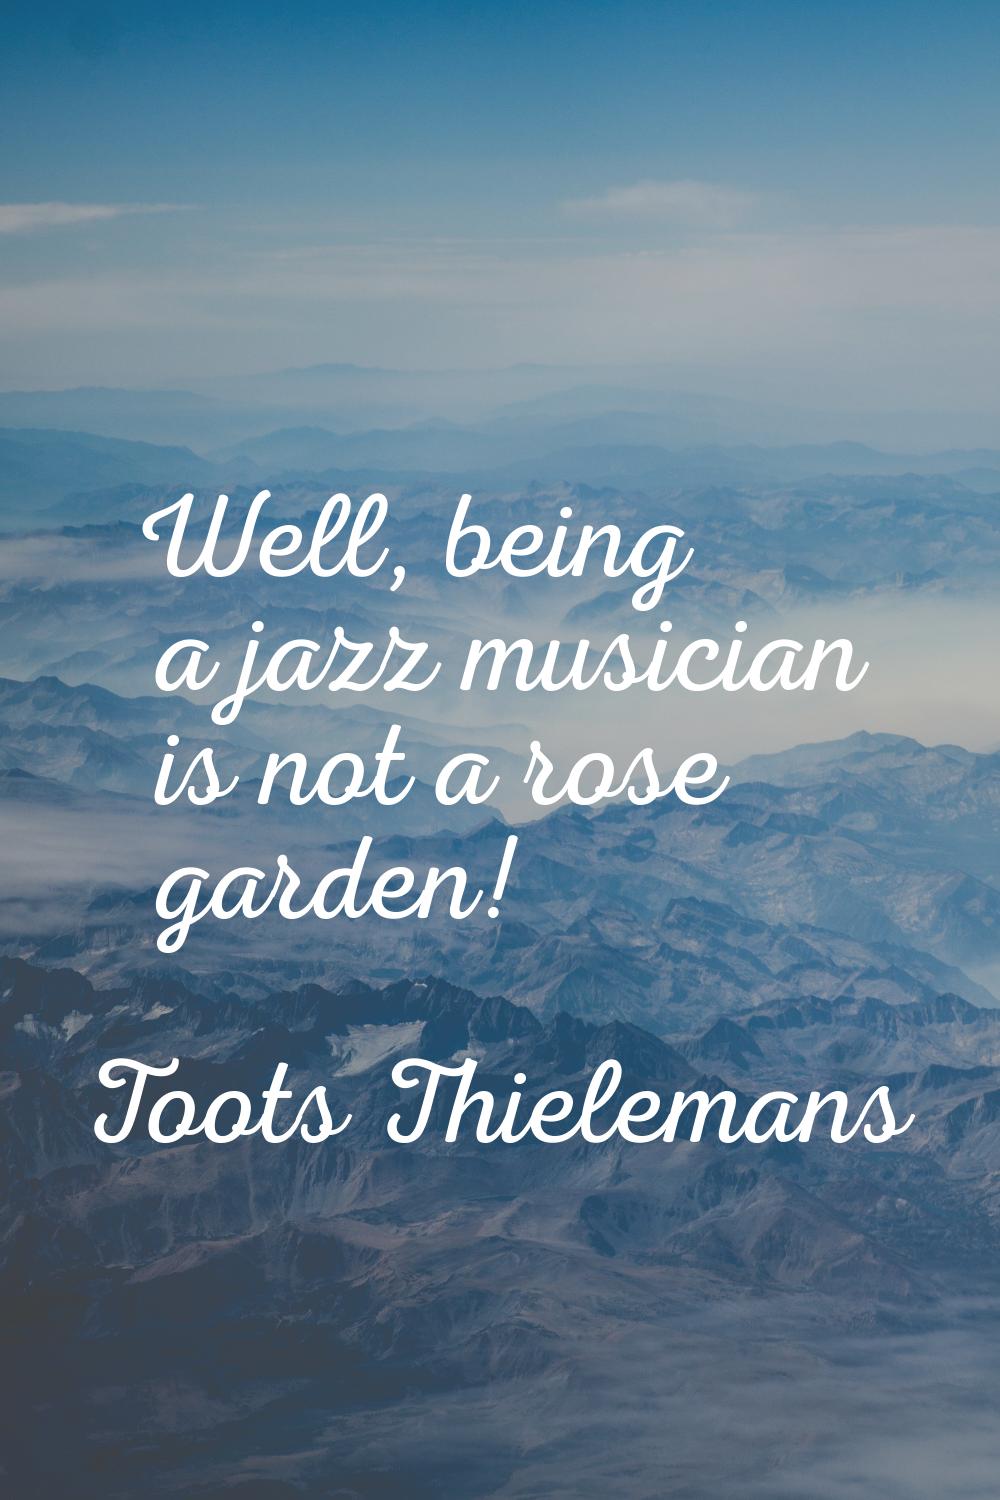 Well, being a jazz musician is not a rose garden!